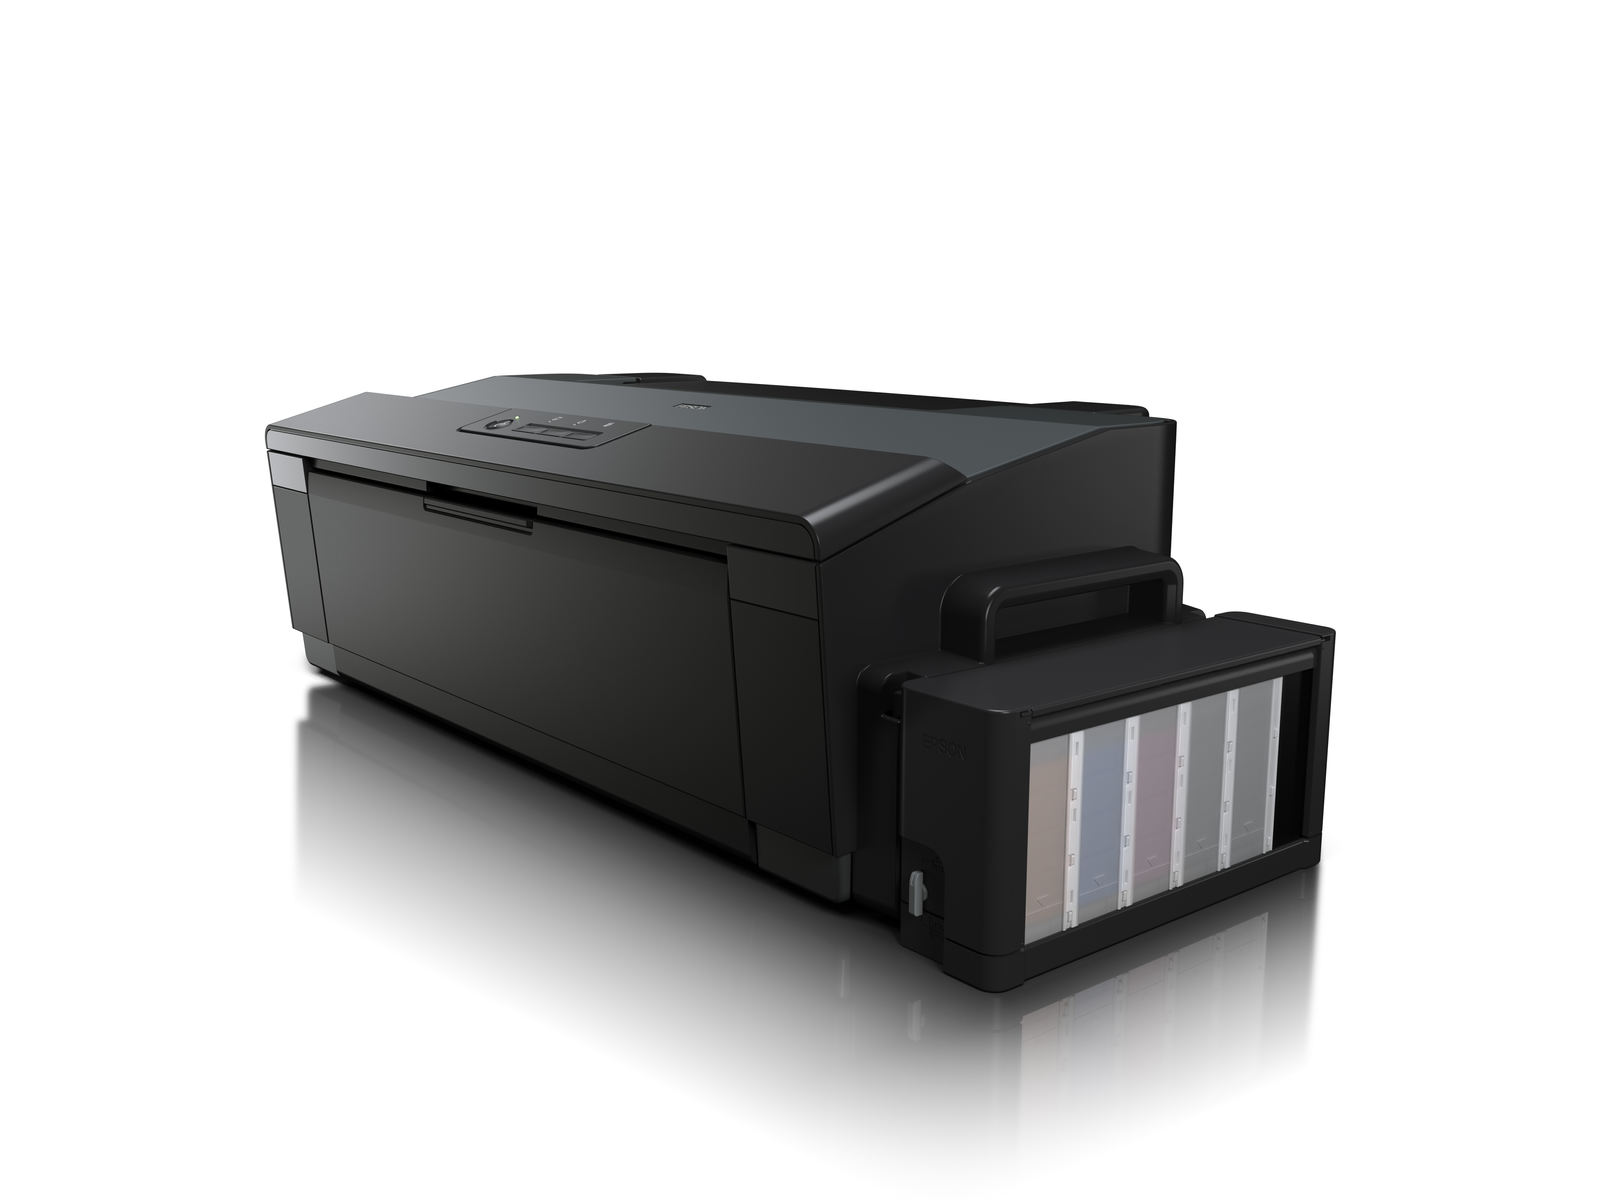 EPSON C11CD81401 Tintenstrahl Netzwerkfähig Drucker